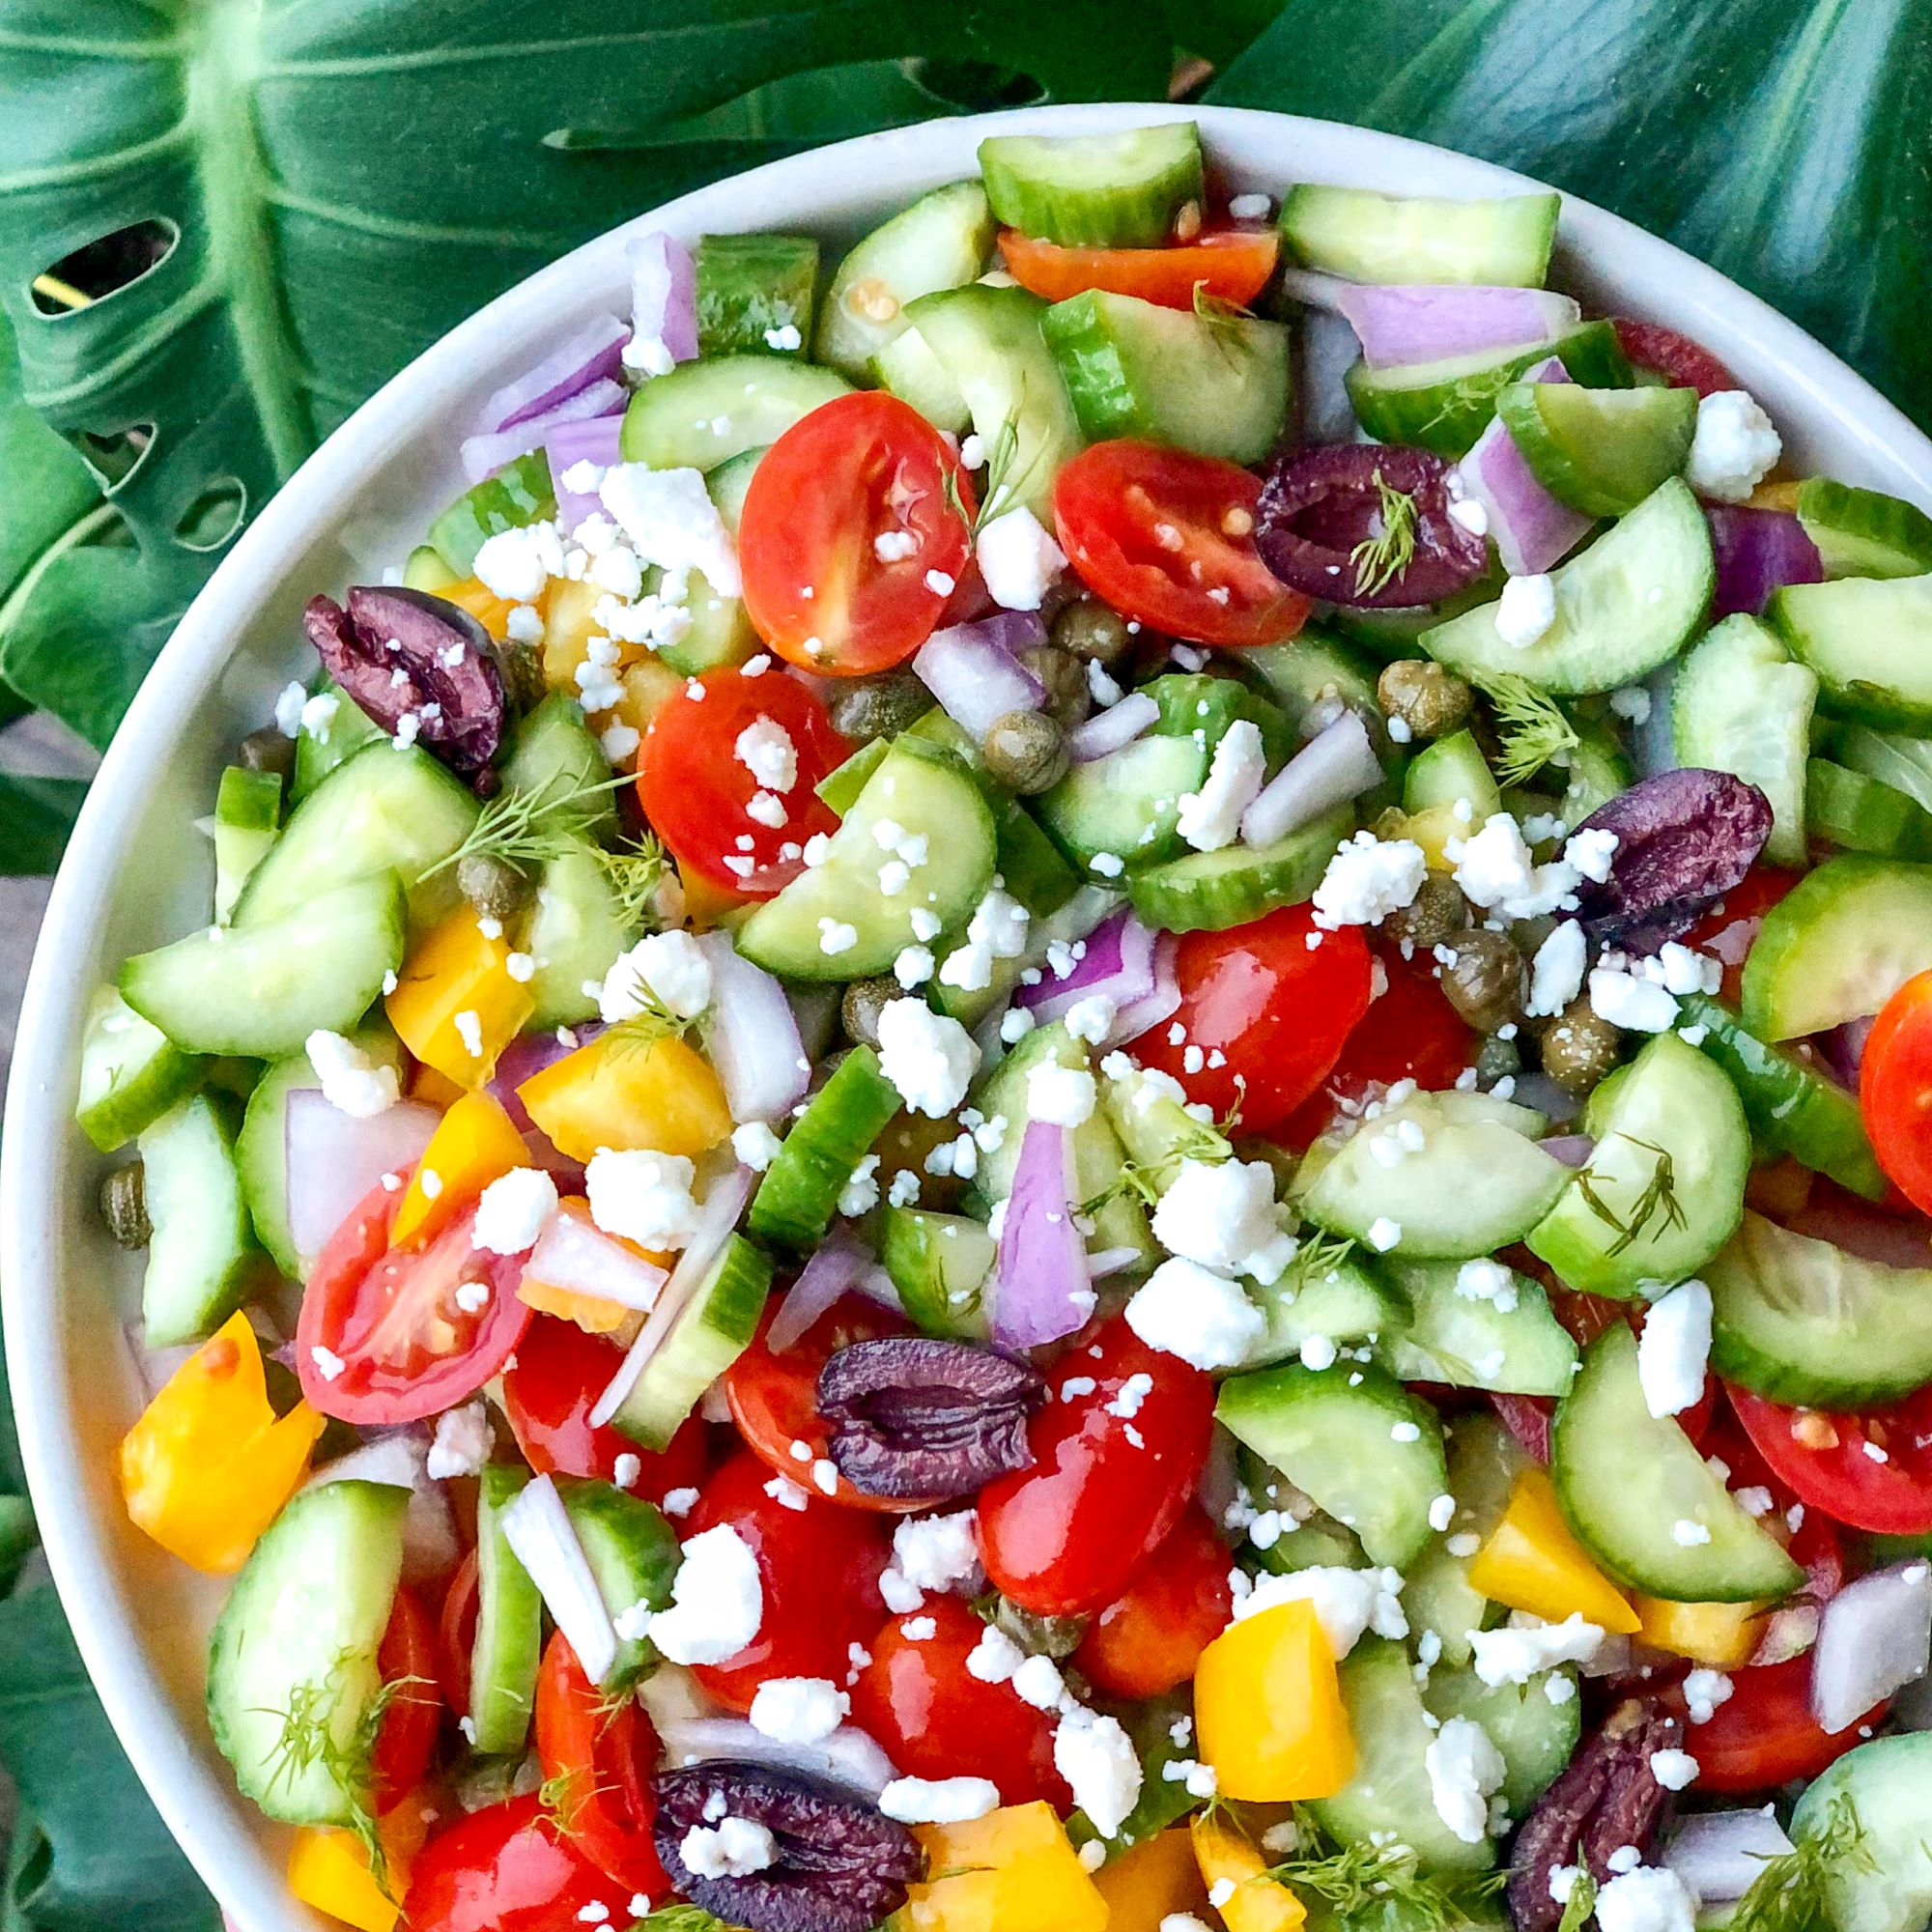 https://healthykel.com/wp-content/uploads/2021/03/greek-salad.jpg